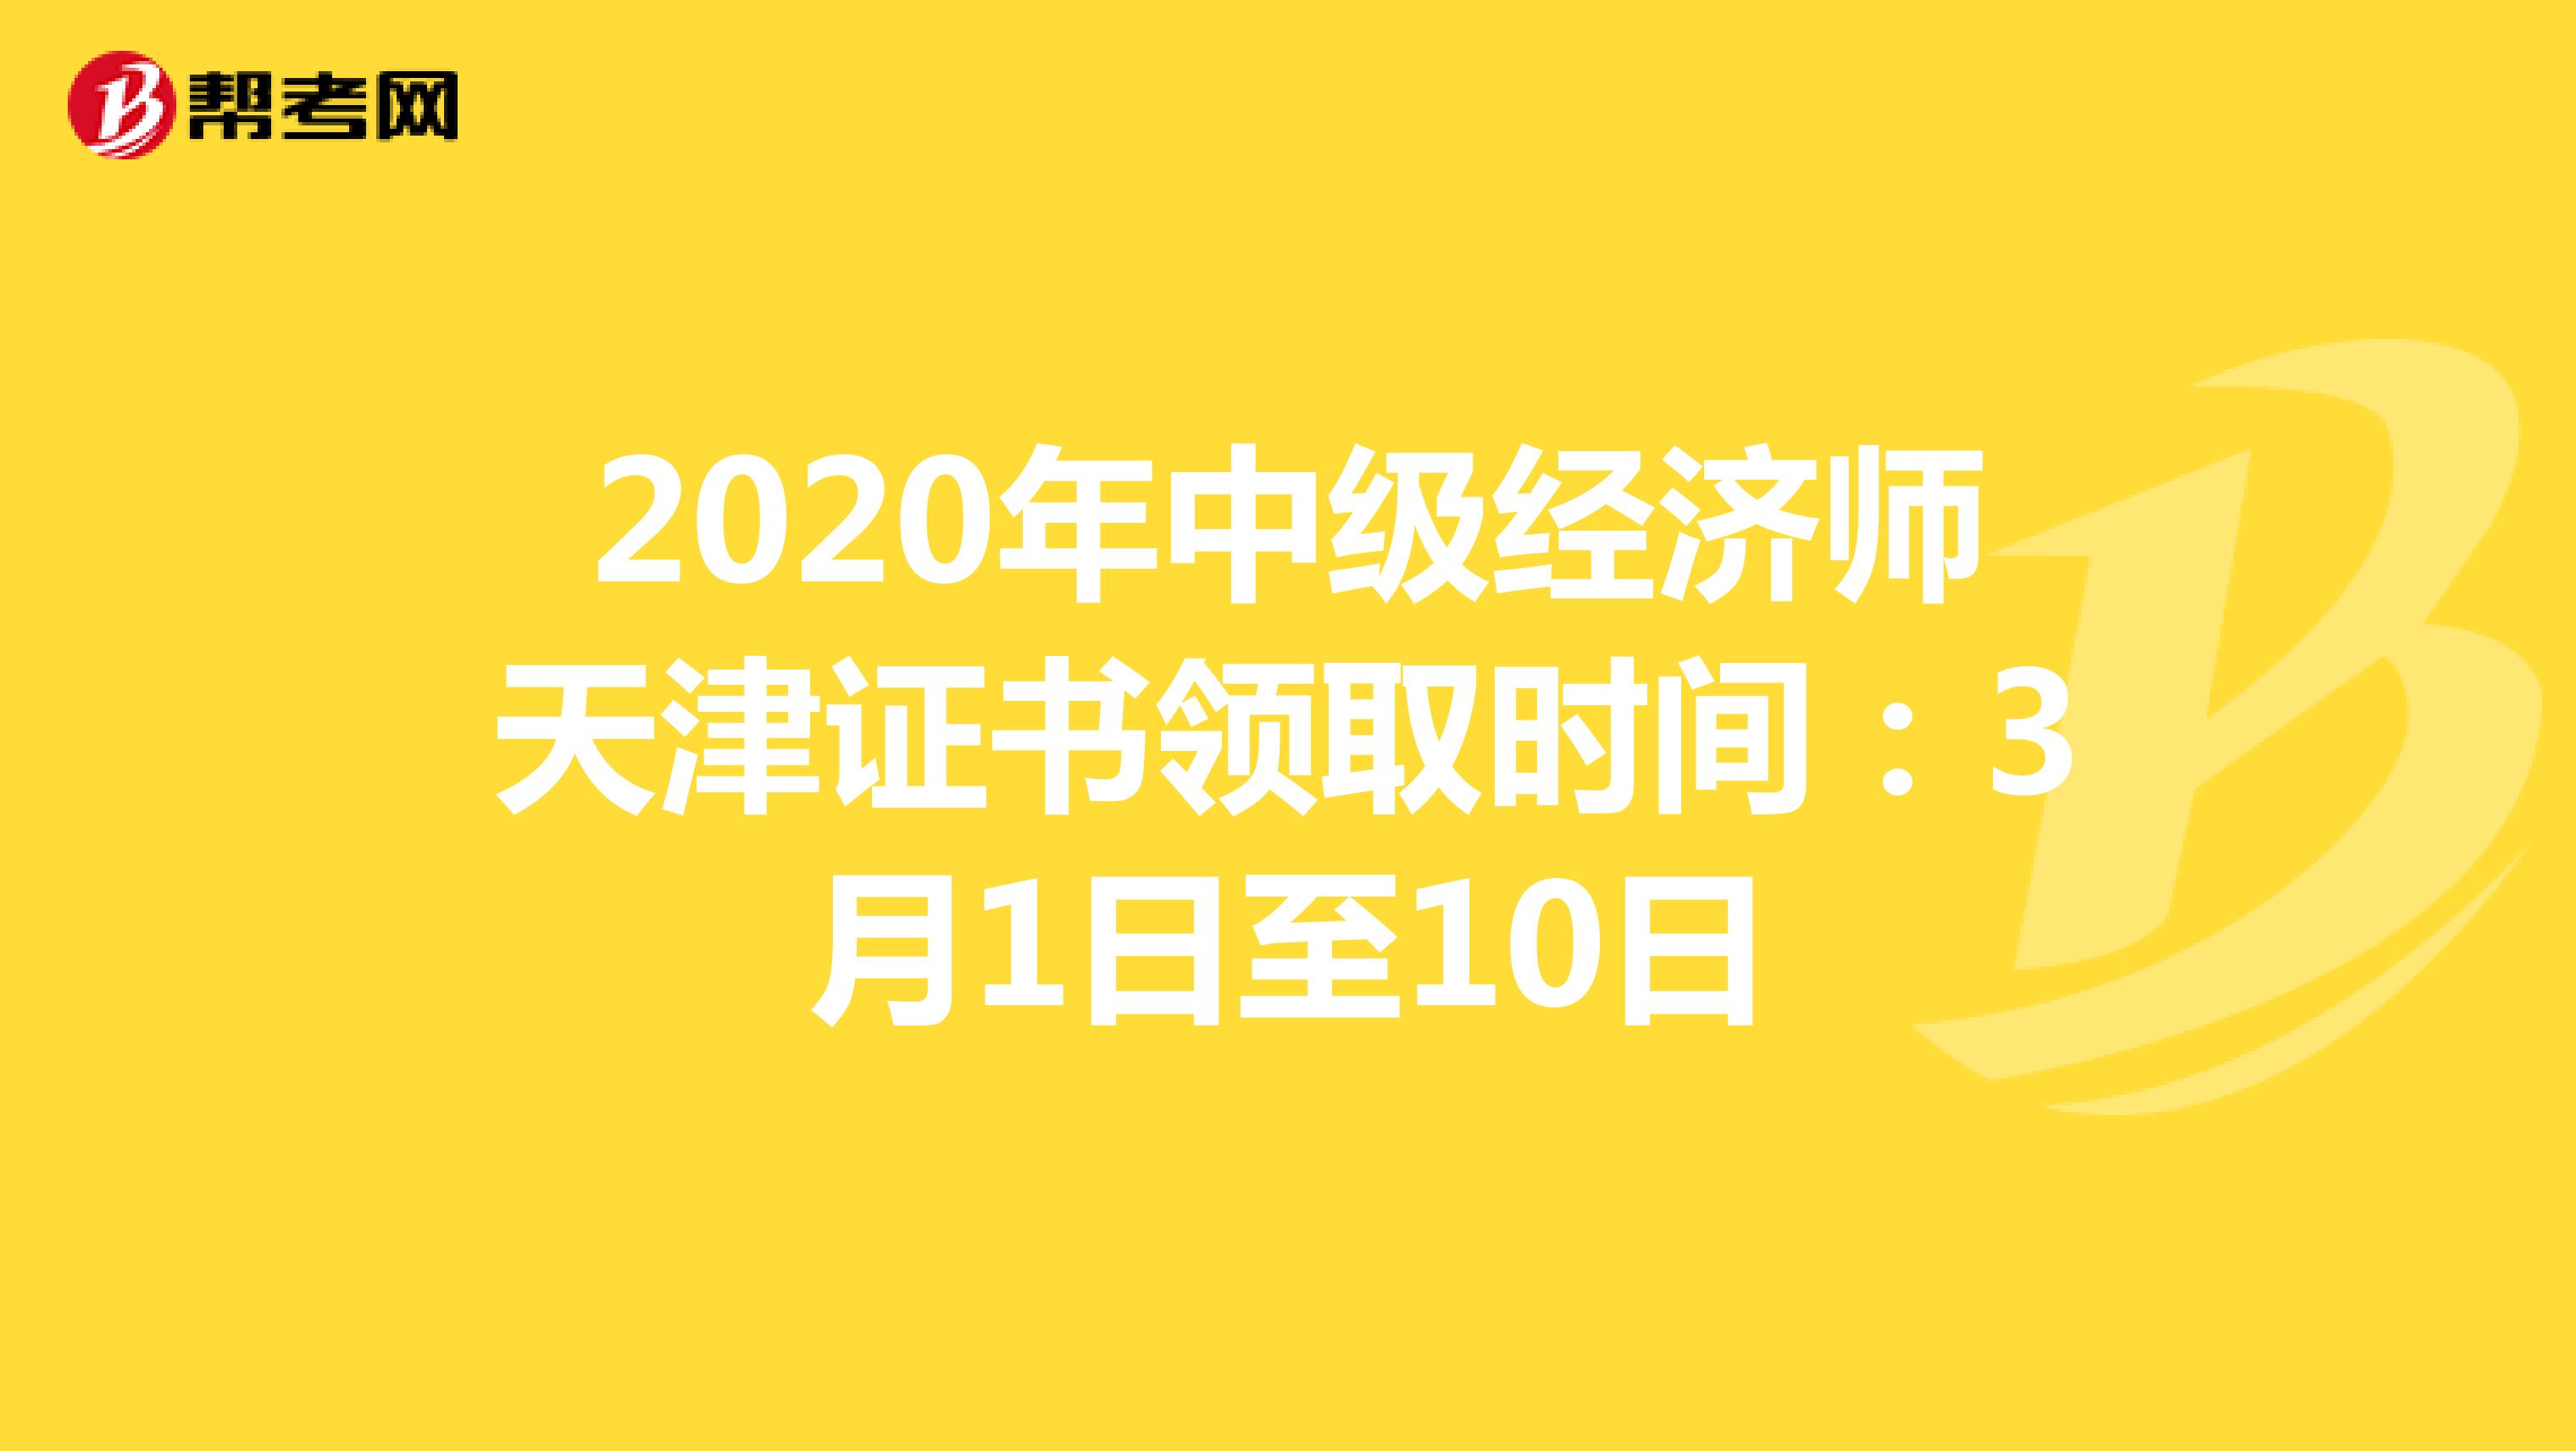 2020年中级经济师天津证书领取时间：3月1日至10日